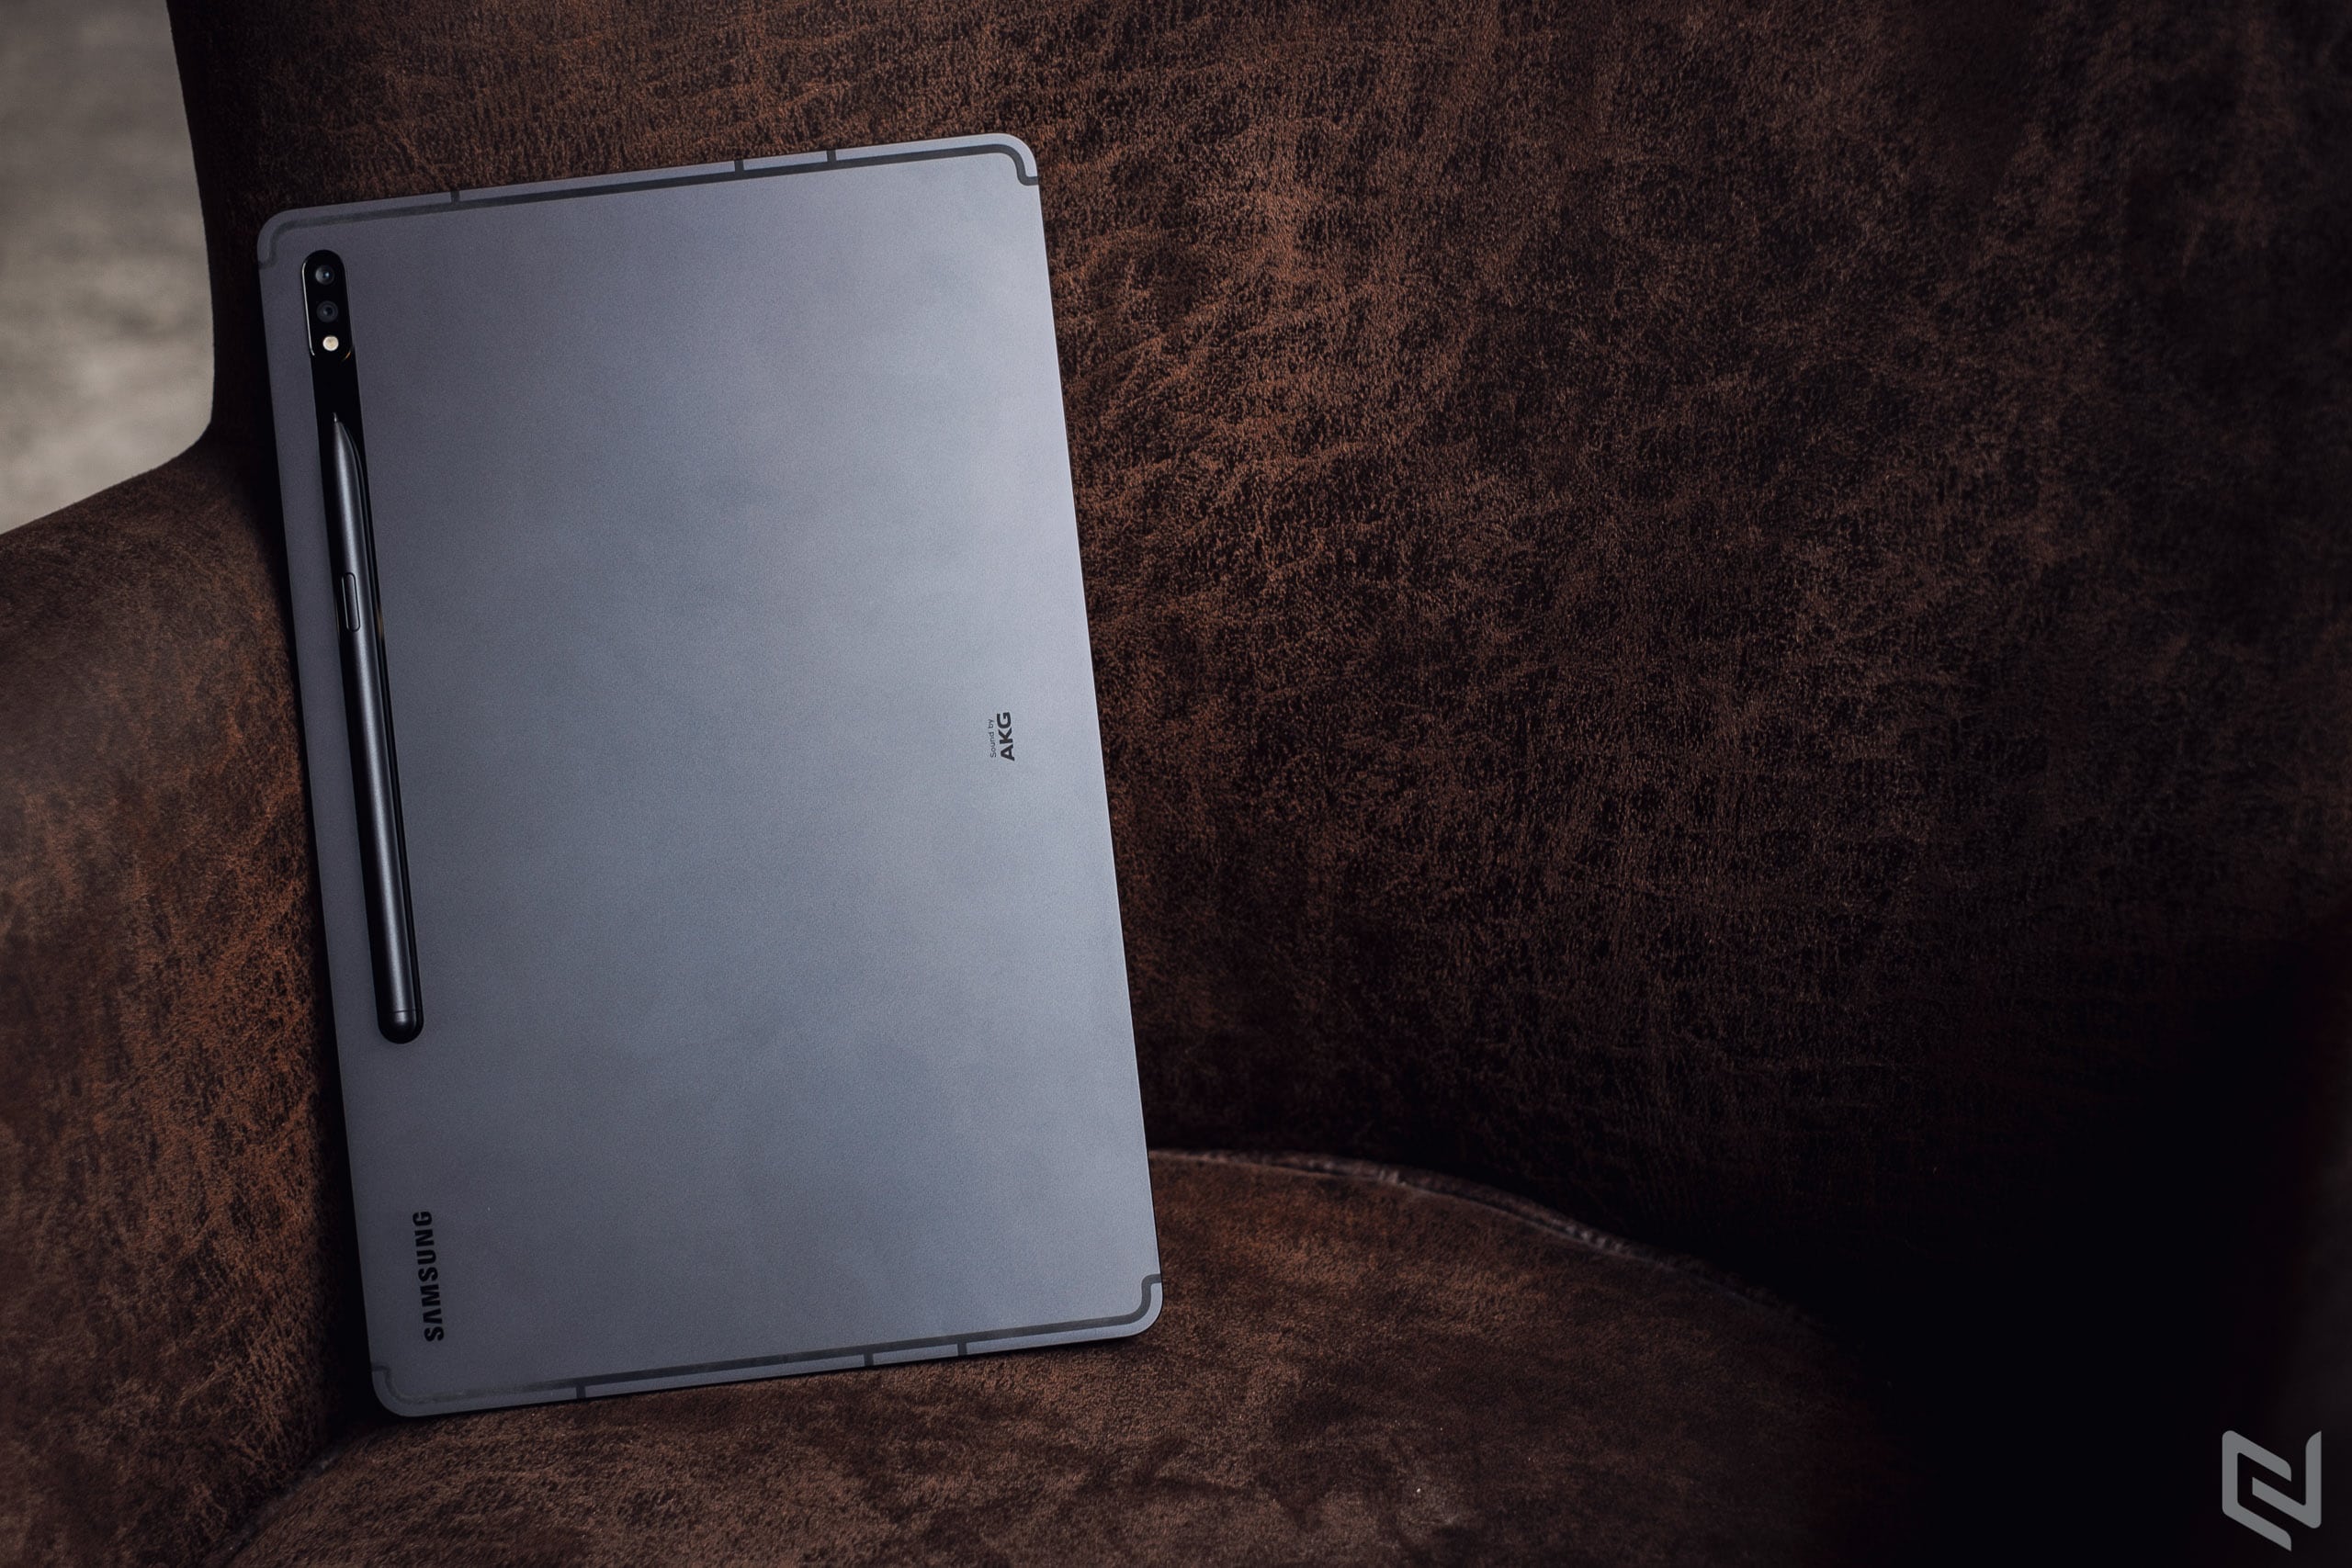 Hé lộ về Galaxy Tab S8 Ultra với màn hình OLED 14.6-inch, kết nối 5G và ra mắt năm 2022